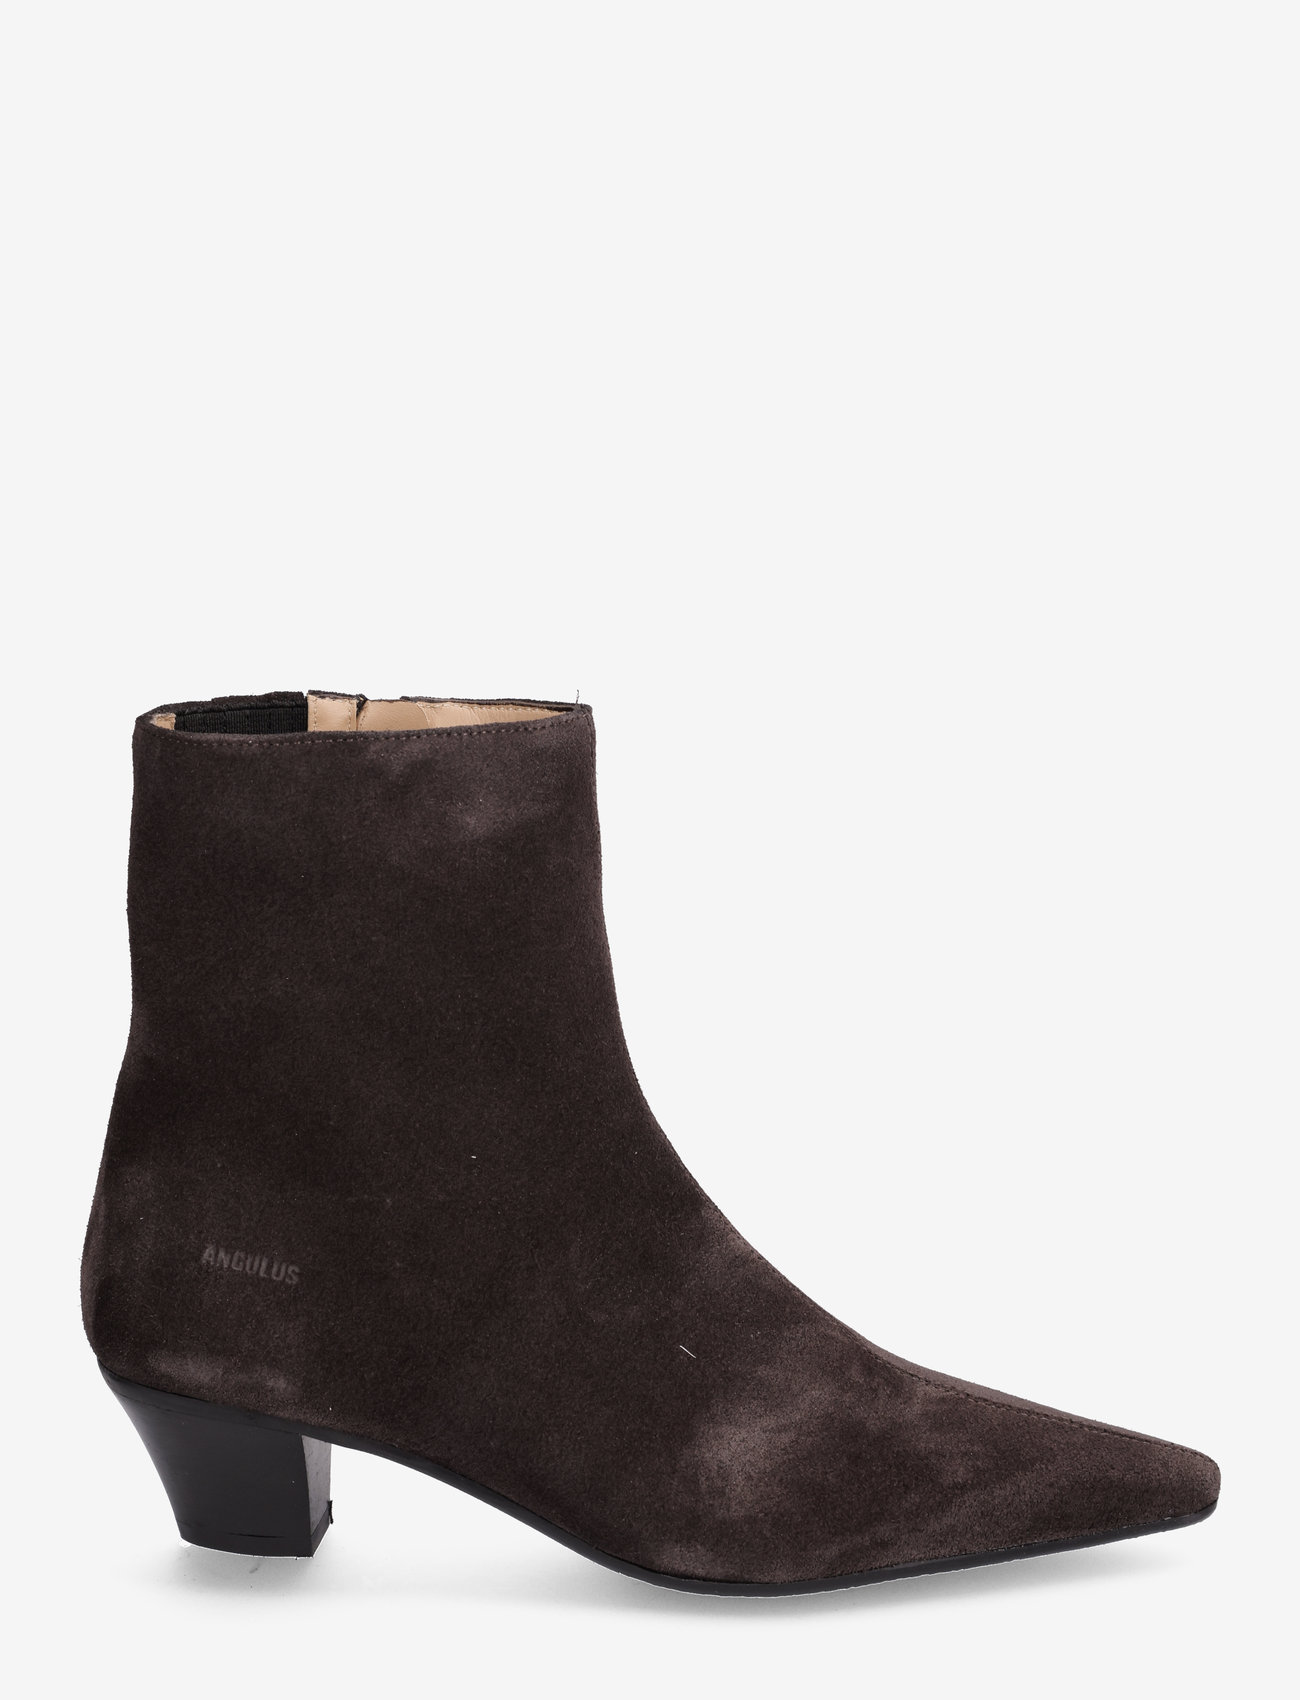 ANGULUS - Boots - Block heel with zipper - hoge hakken - 1716/001 espresso - 1